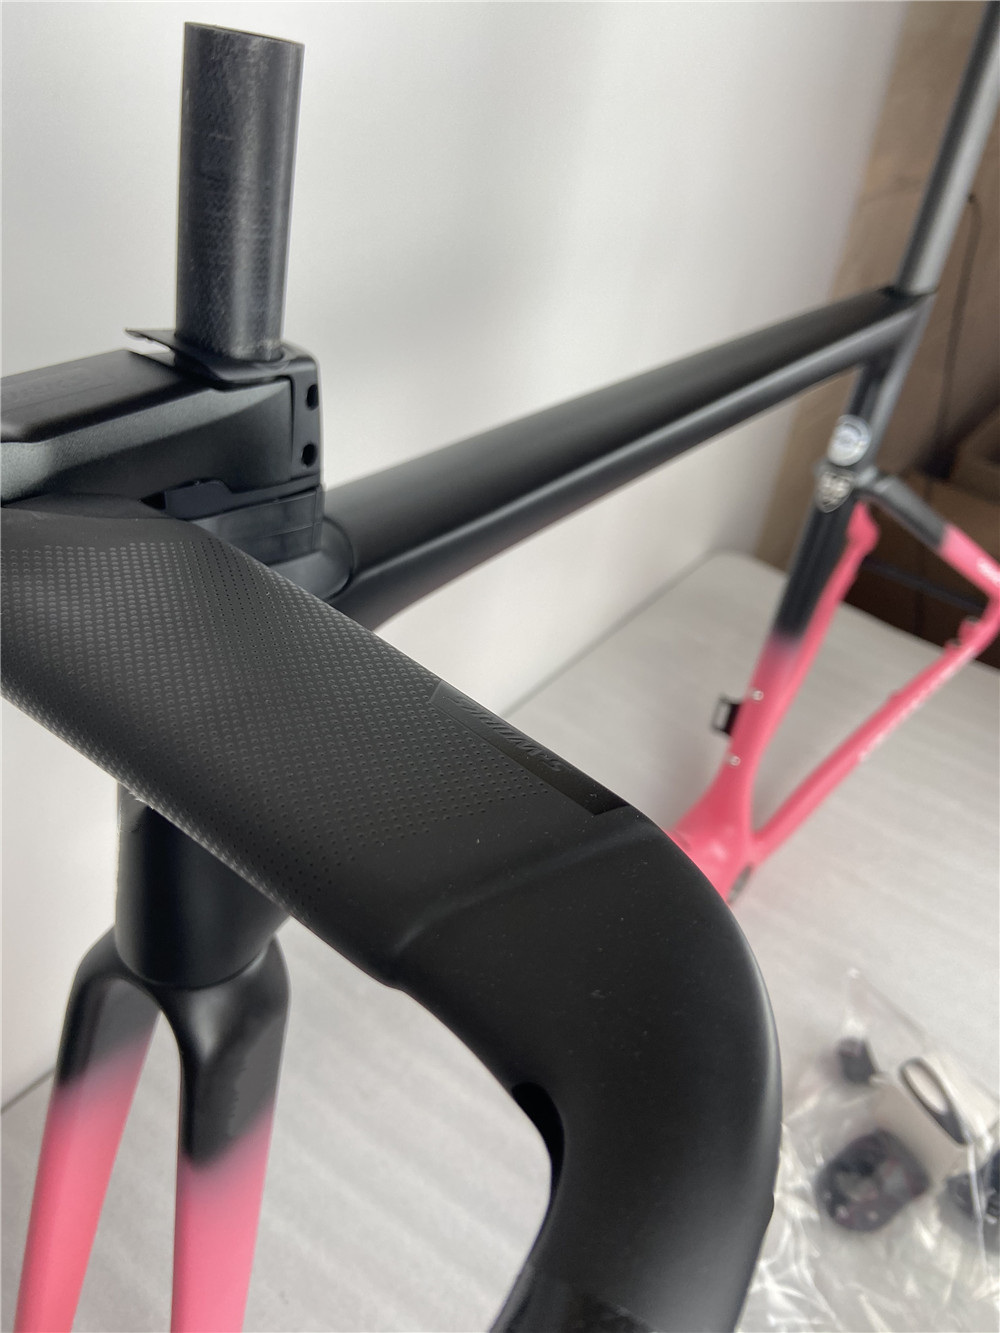 2021 탄소 도로 자전거 핑크 블랙 프레임, 내부 배선 기계 그룹과 호환 700C 탄소 섬유 도로 자전거 프레임